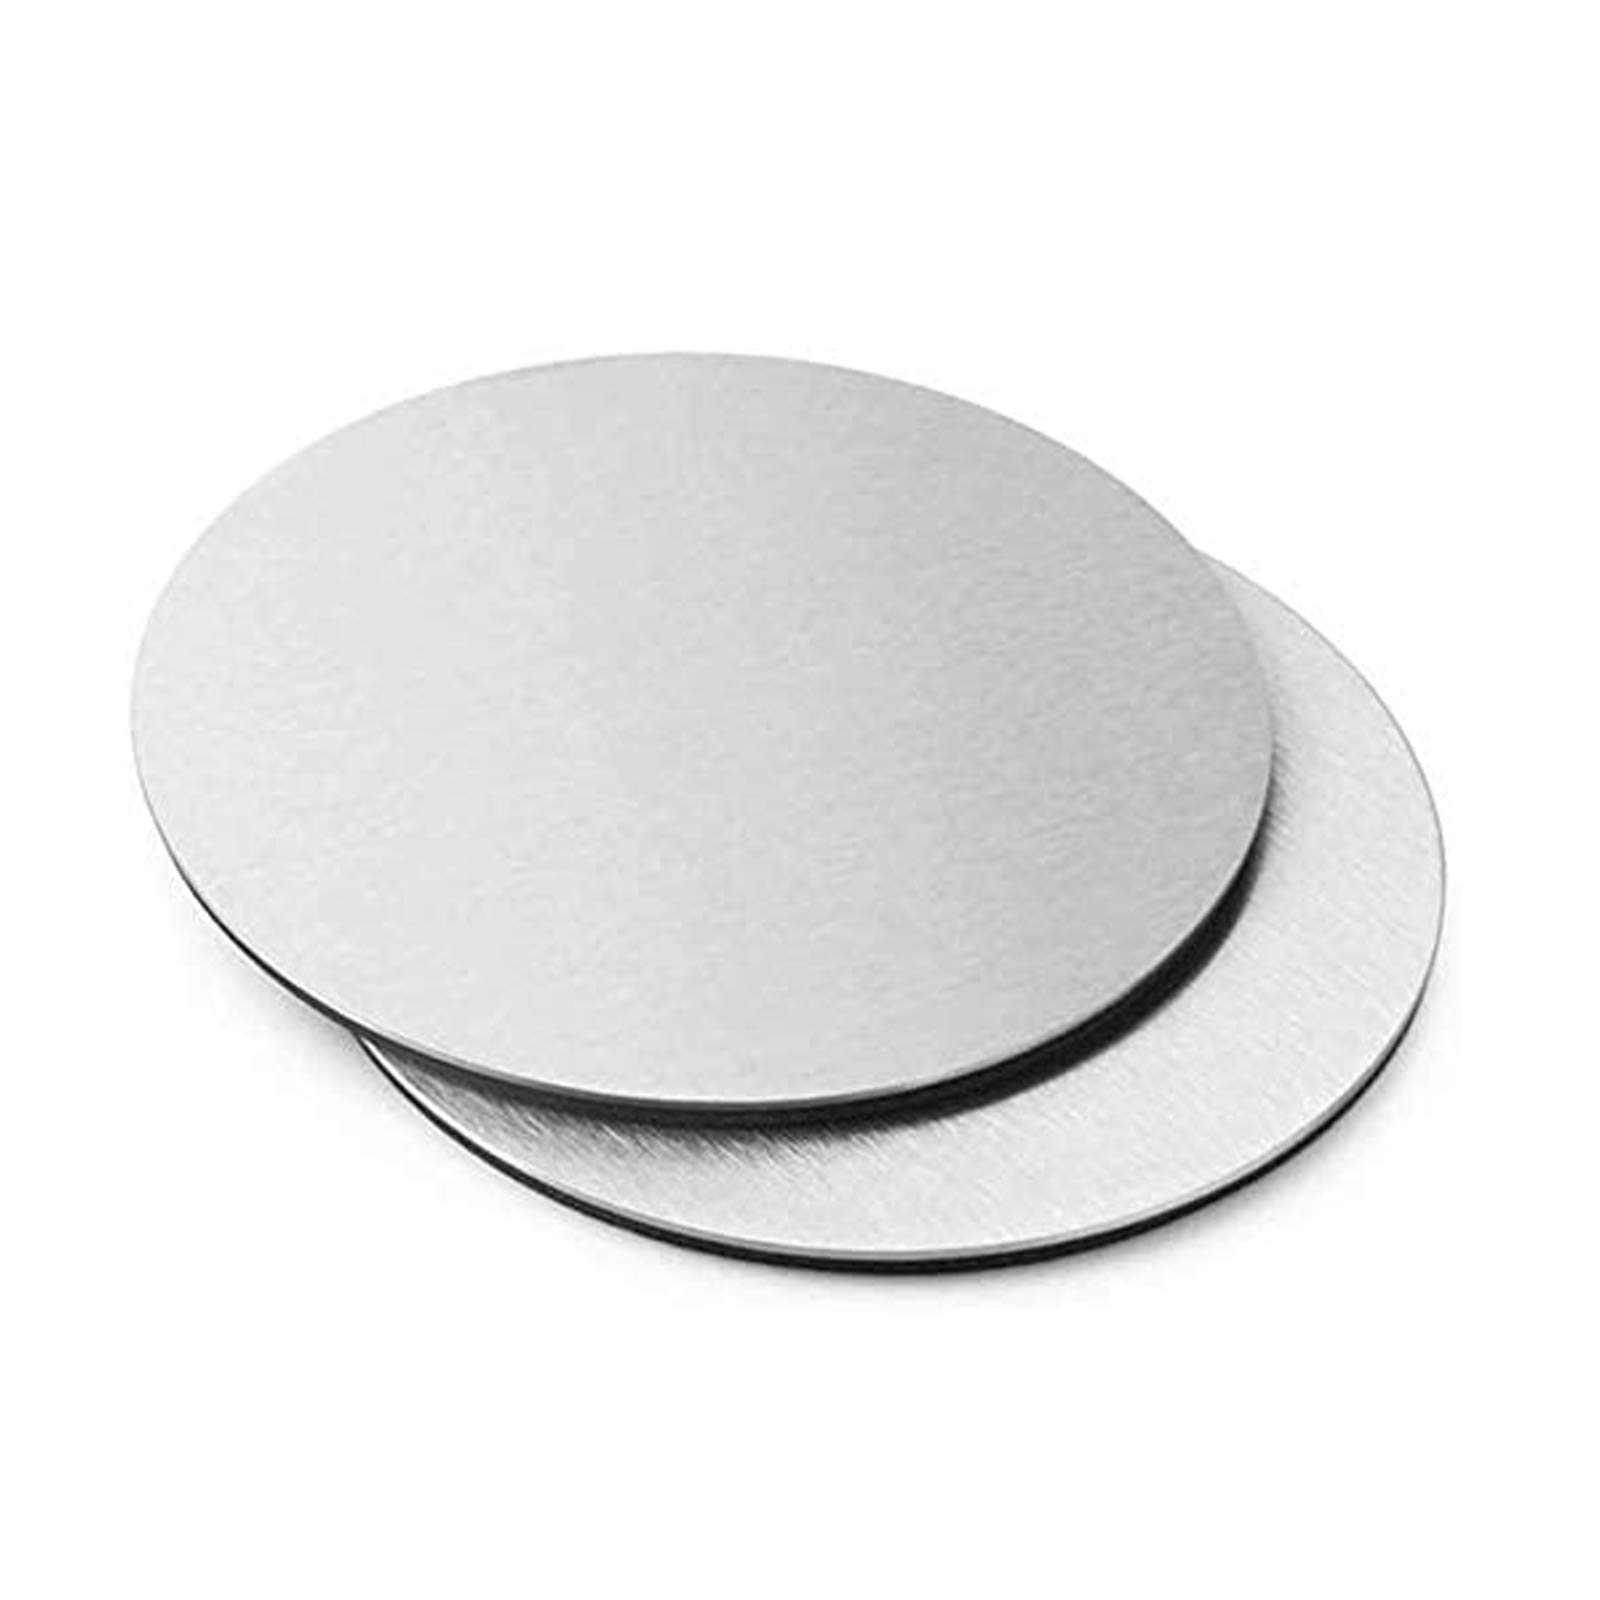 IQQI 2 Stück Rundes Edelstahlblech, Für Die Metallbearbeitung DIY (Dicke 0,5 mm Durchmesser 250/300 mm),Diameter 300mm